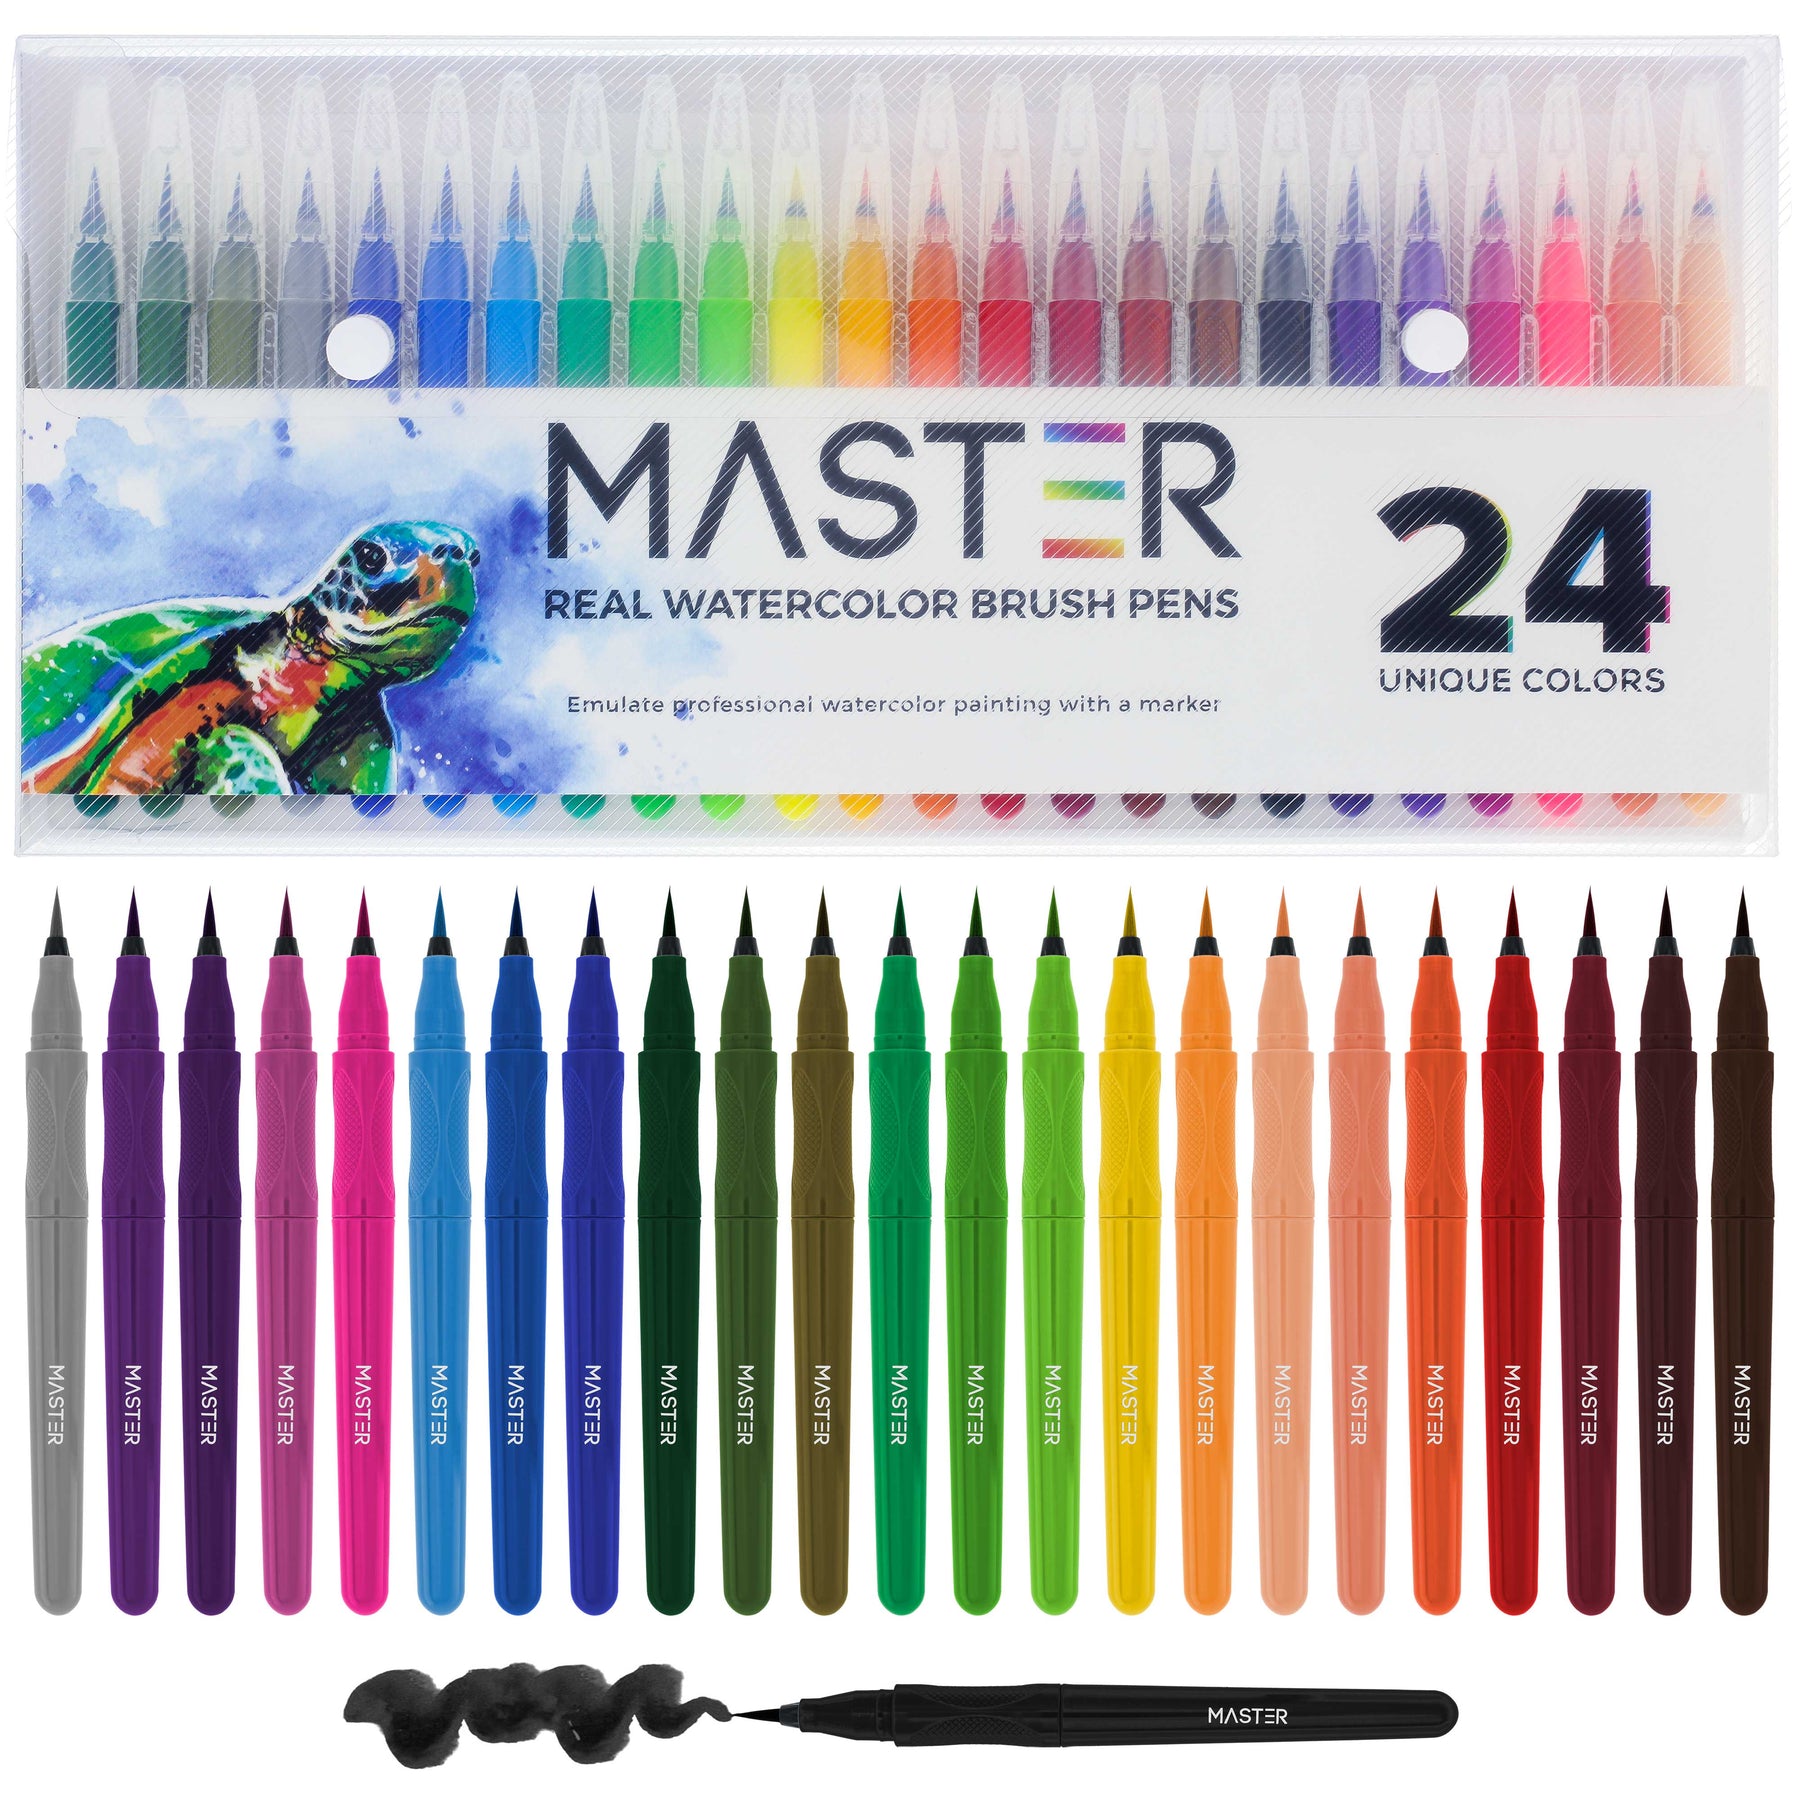 Wholesale Soft Head Watercolor Pen Set, 24 Colors by FLOMO